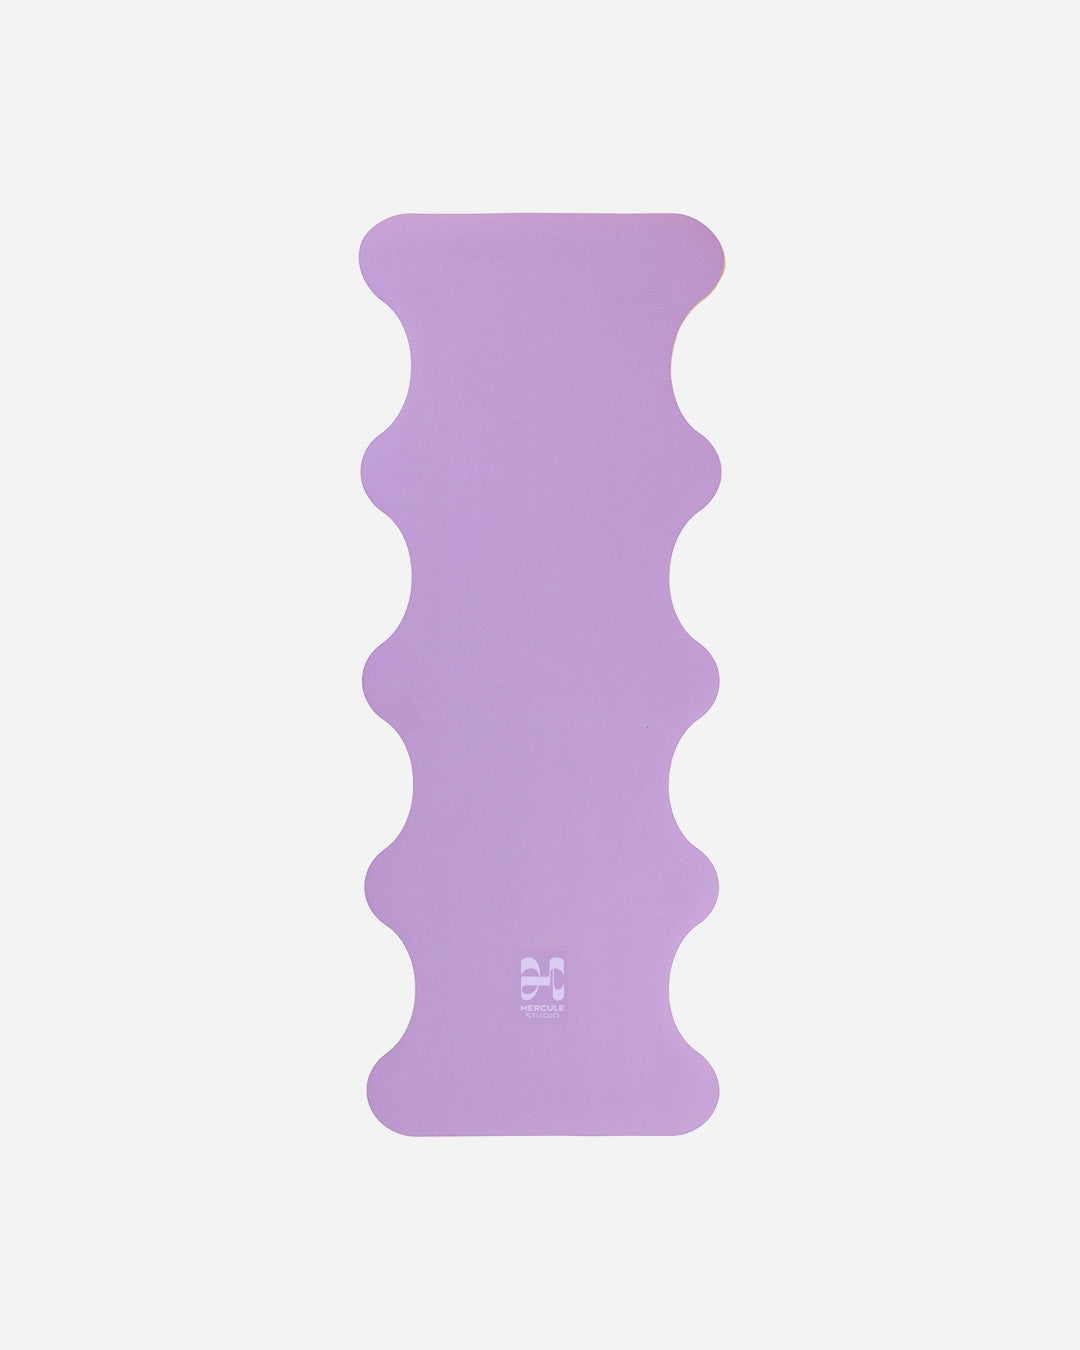 Tapis de sol pour le yoga de la marque hercule studio modèle mar couleur lavande packshot déplié